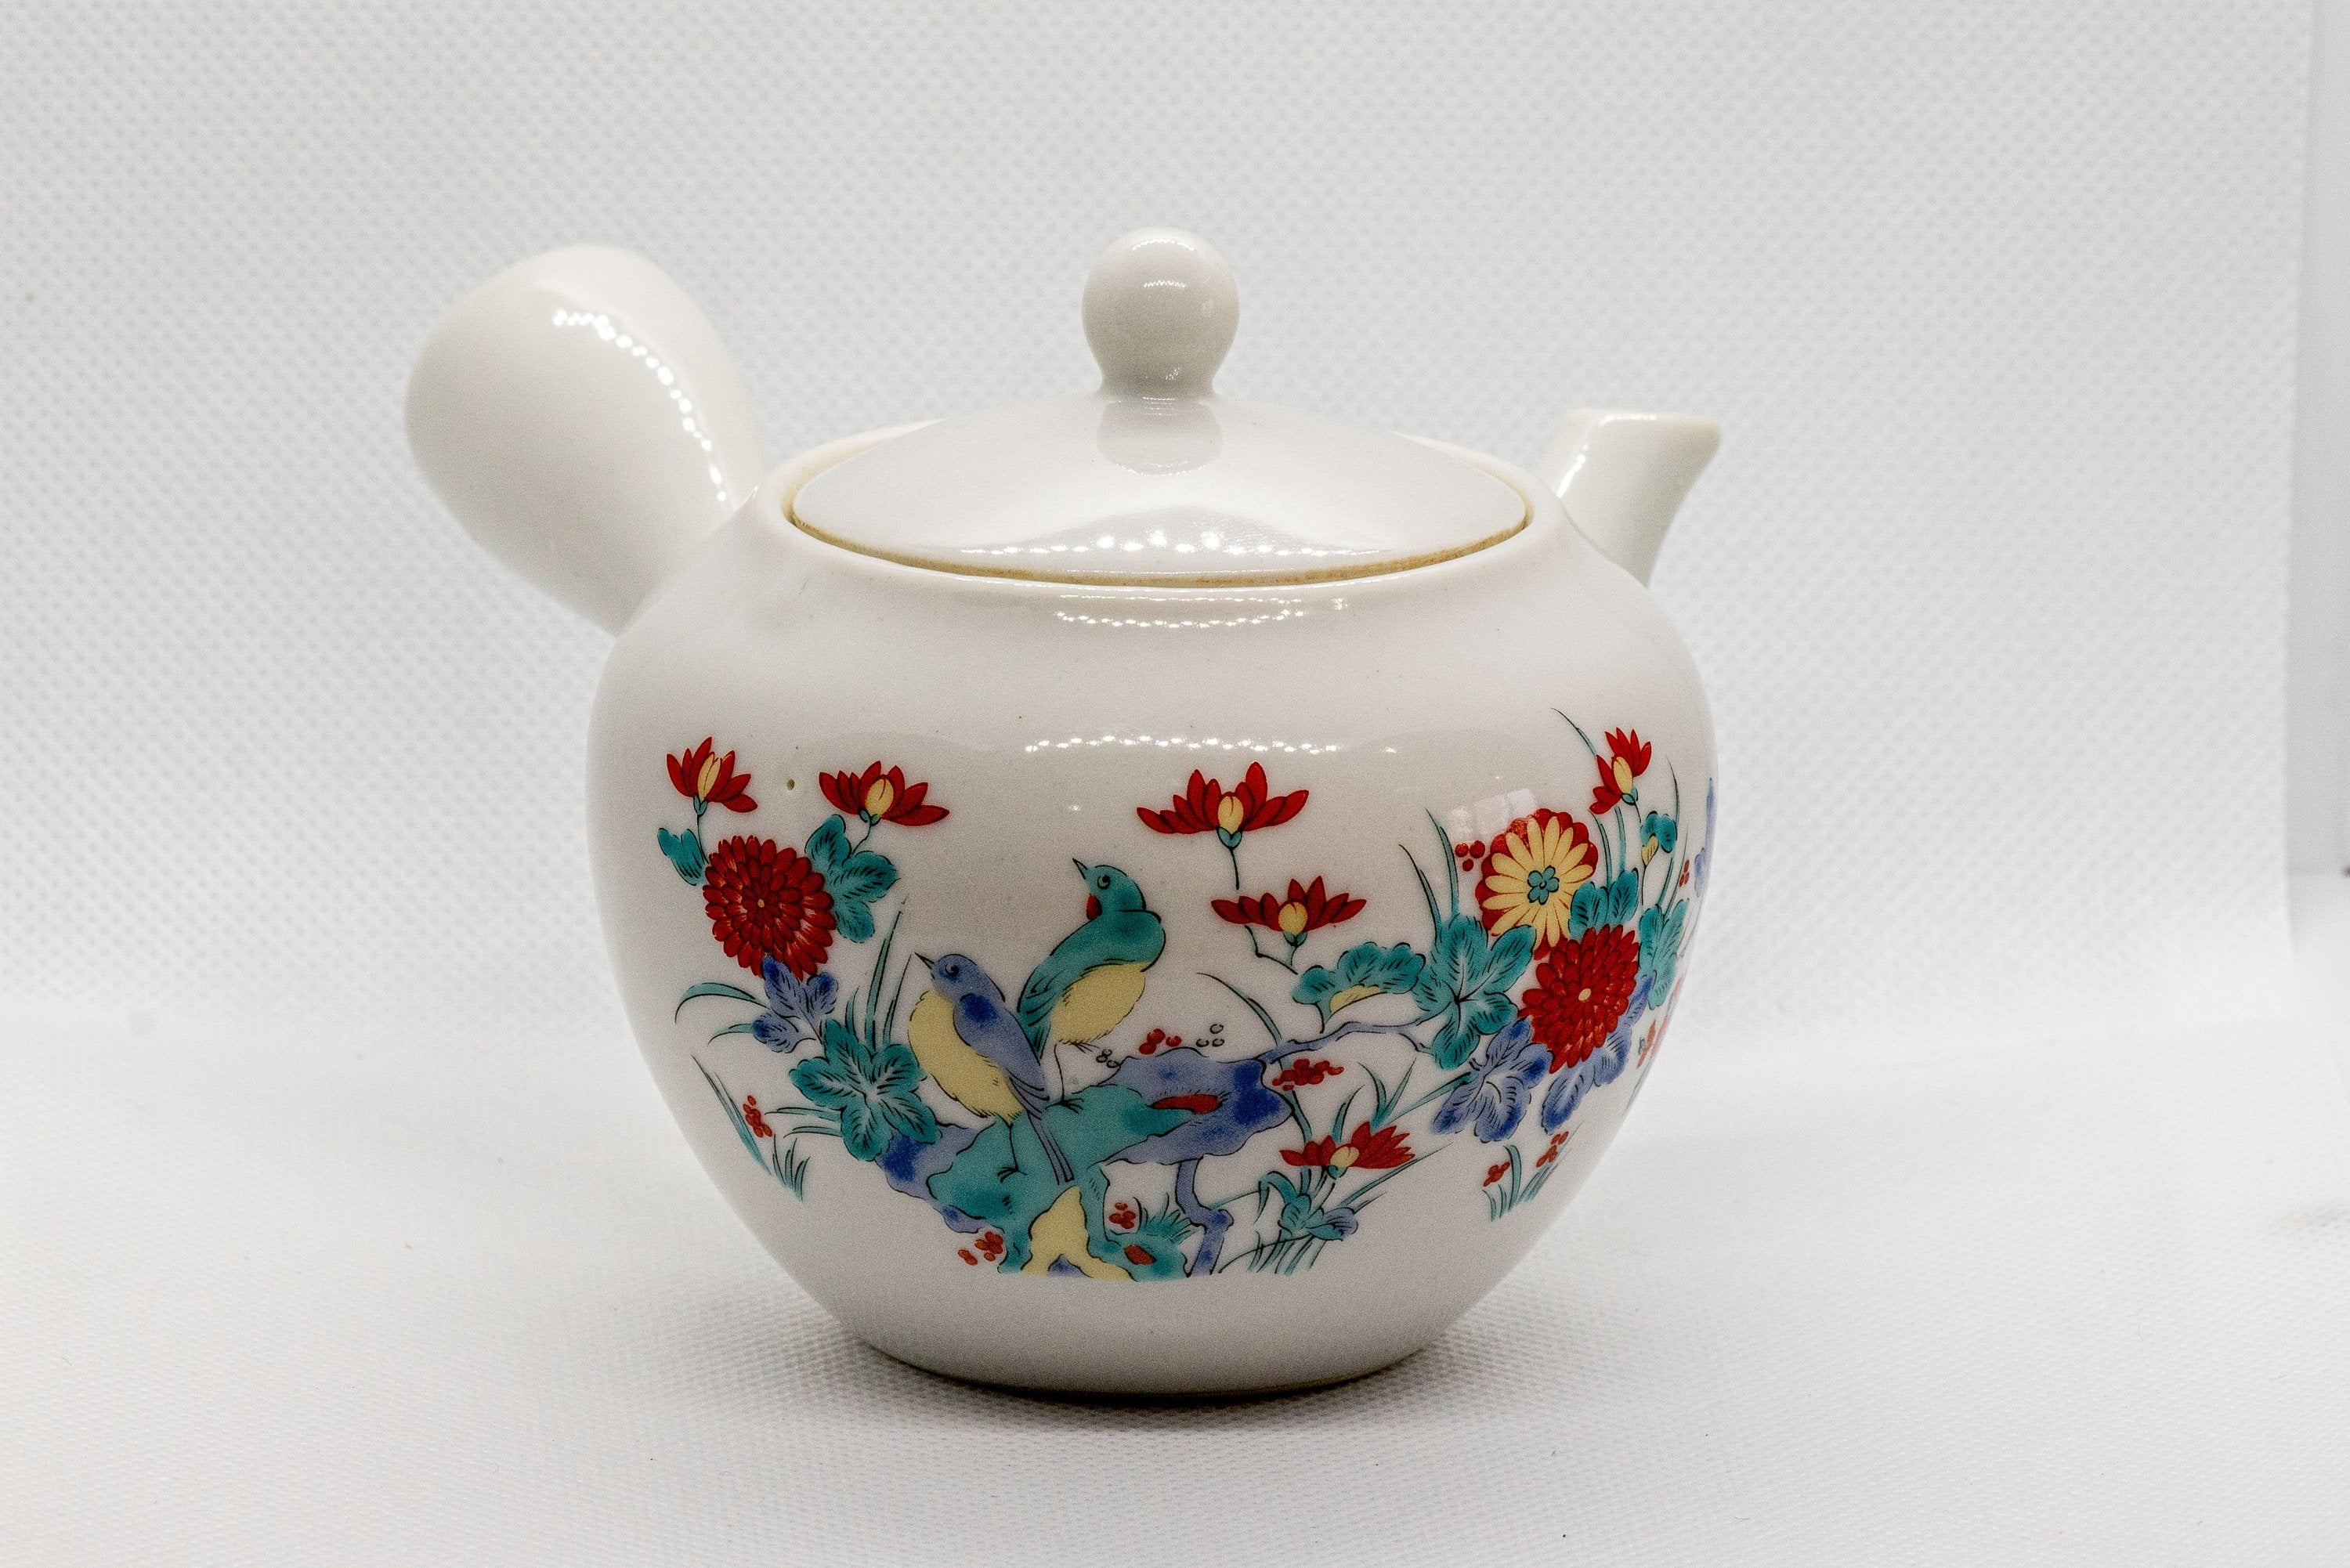 Japanese Kyusu - White Porcelain Teapot with Elegant Persimmon Decoration - 250ml - Tezumi